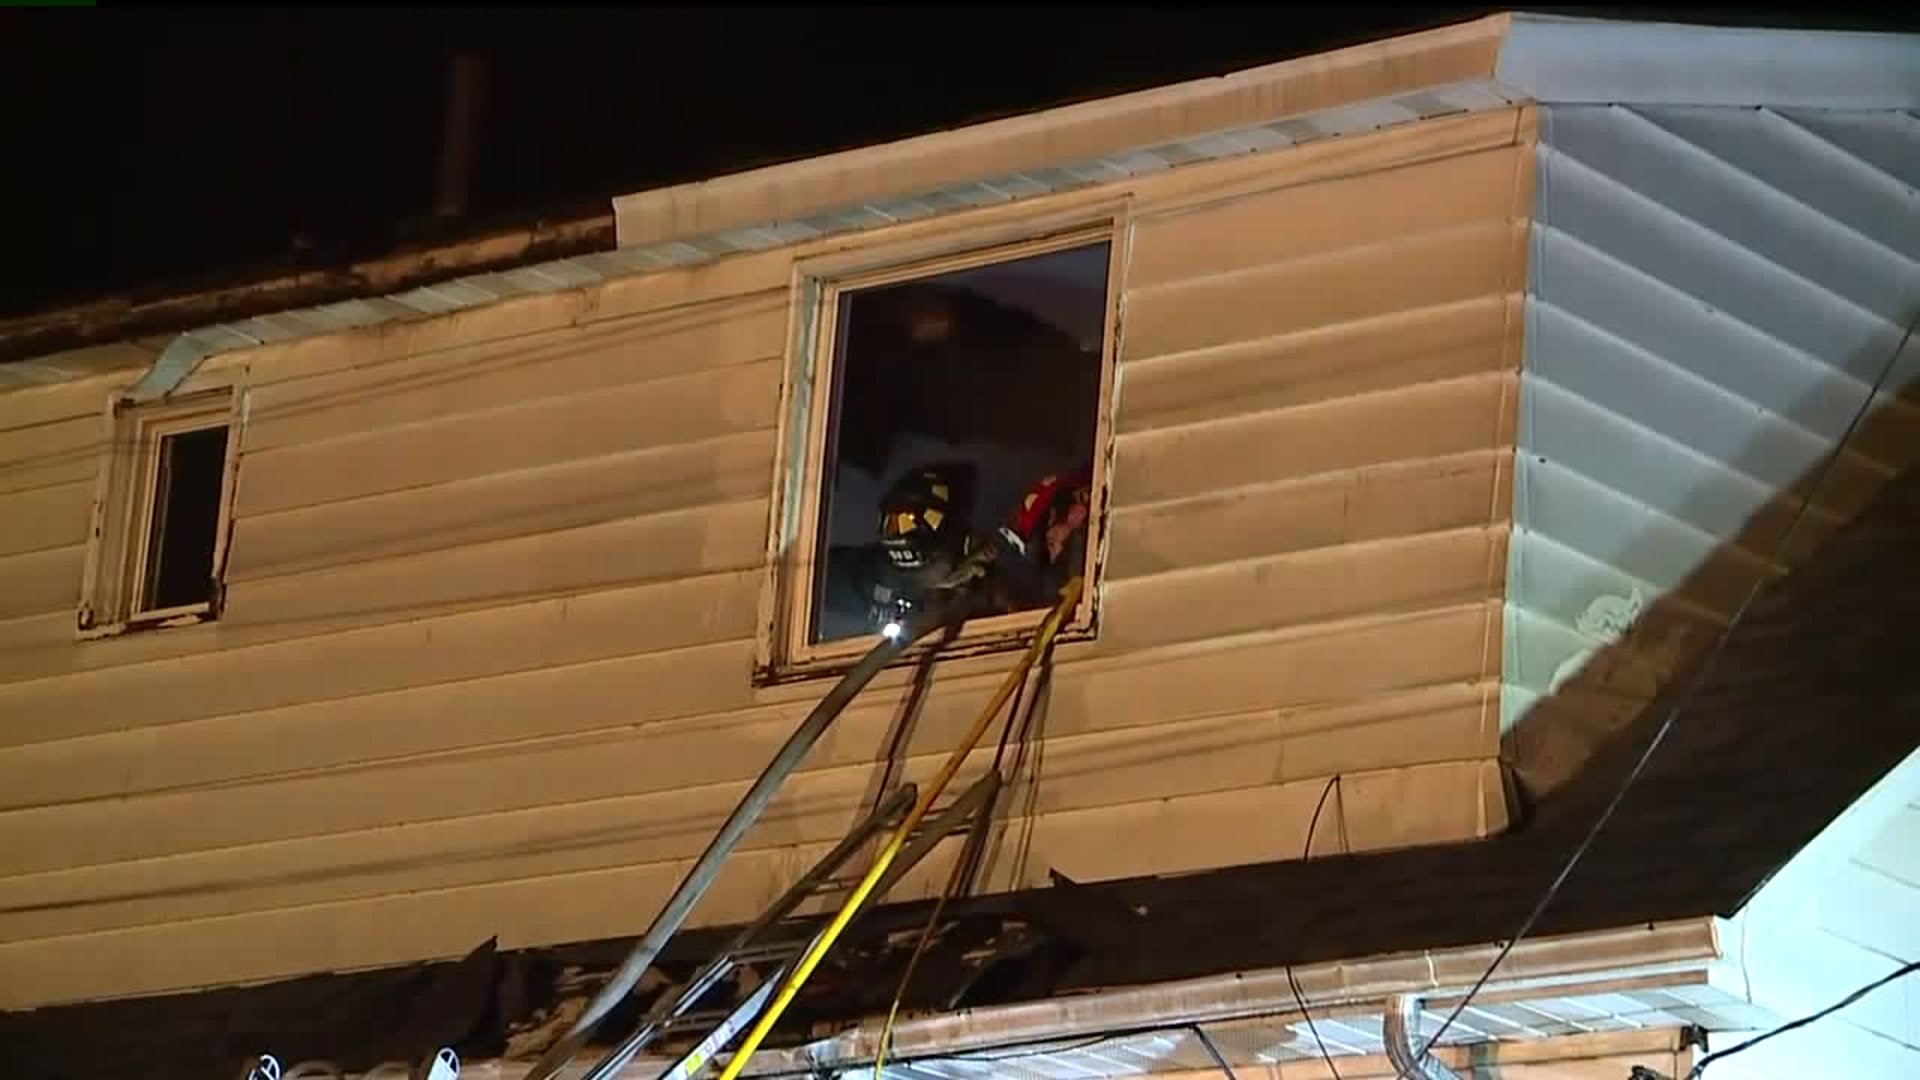 Flames Damage Home in Scranton